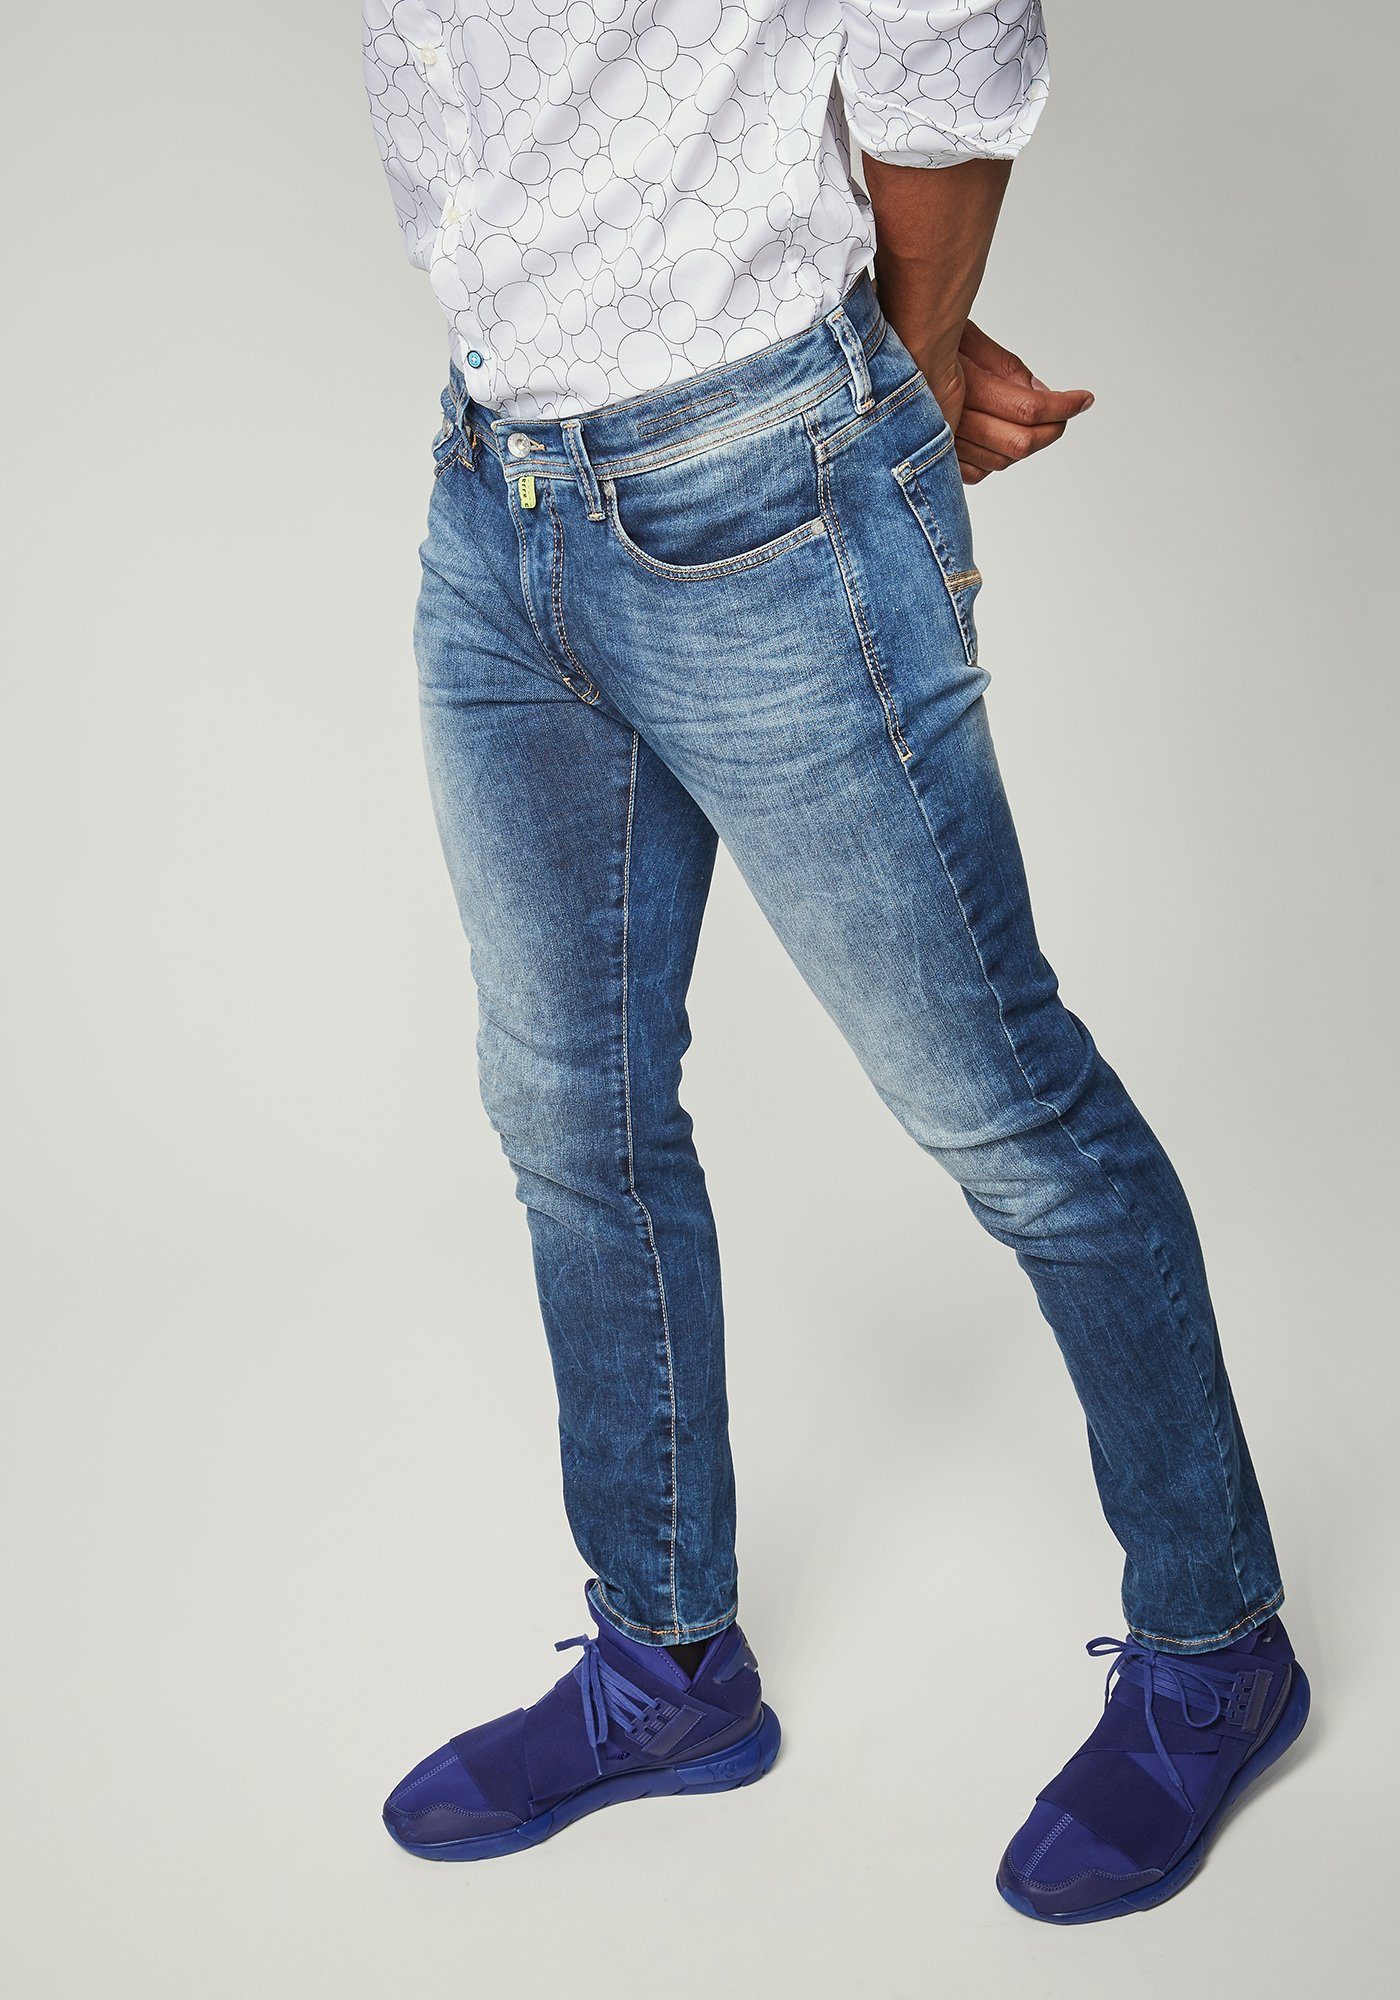 Otto - Pierre Cardin NU 15% KORTING: PIERRE CARDIN Jeans - Slim Fit Paris Futureflex Eco